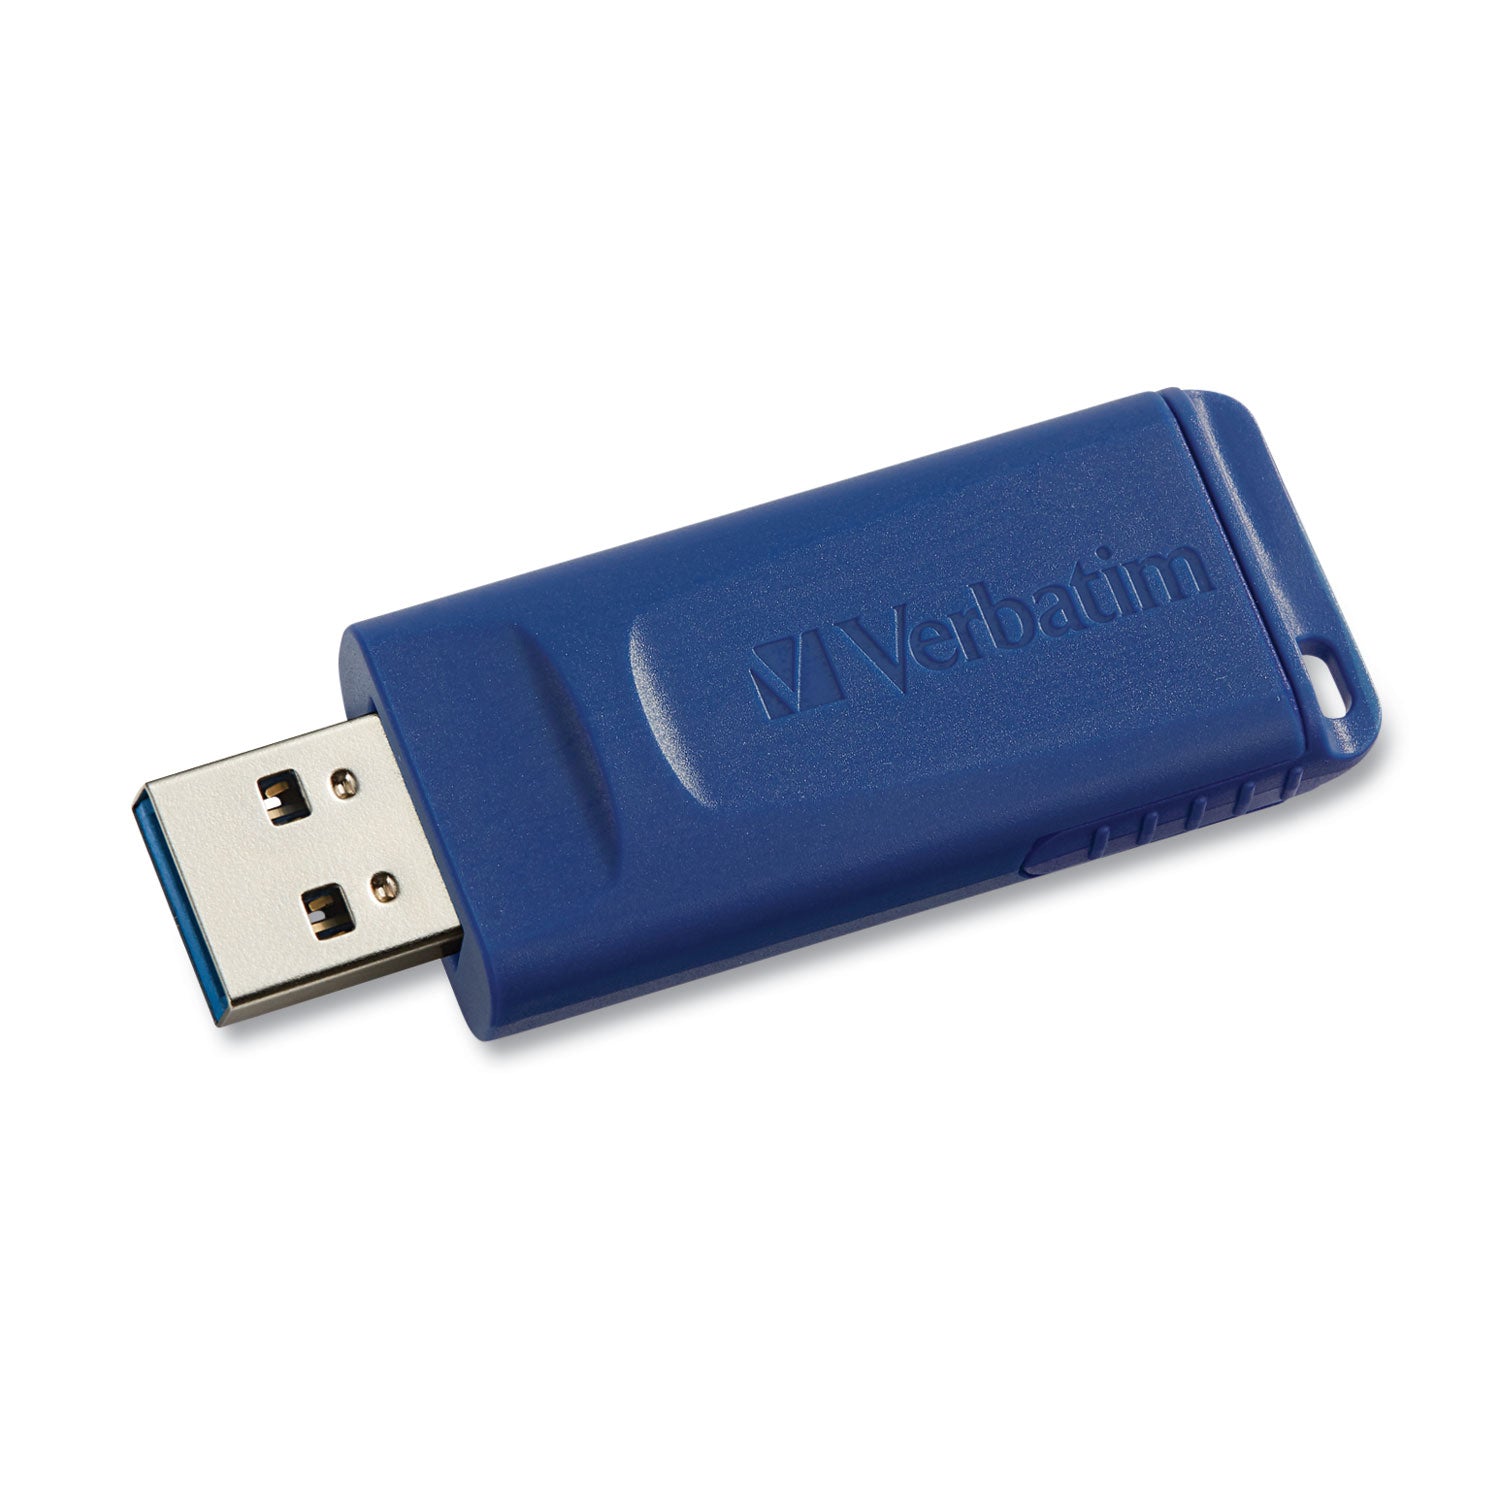 Classic USB 2.0 Flash Drive, 16 GB, Blue - 1